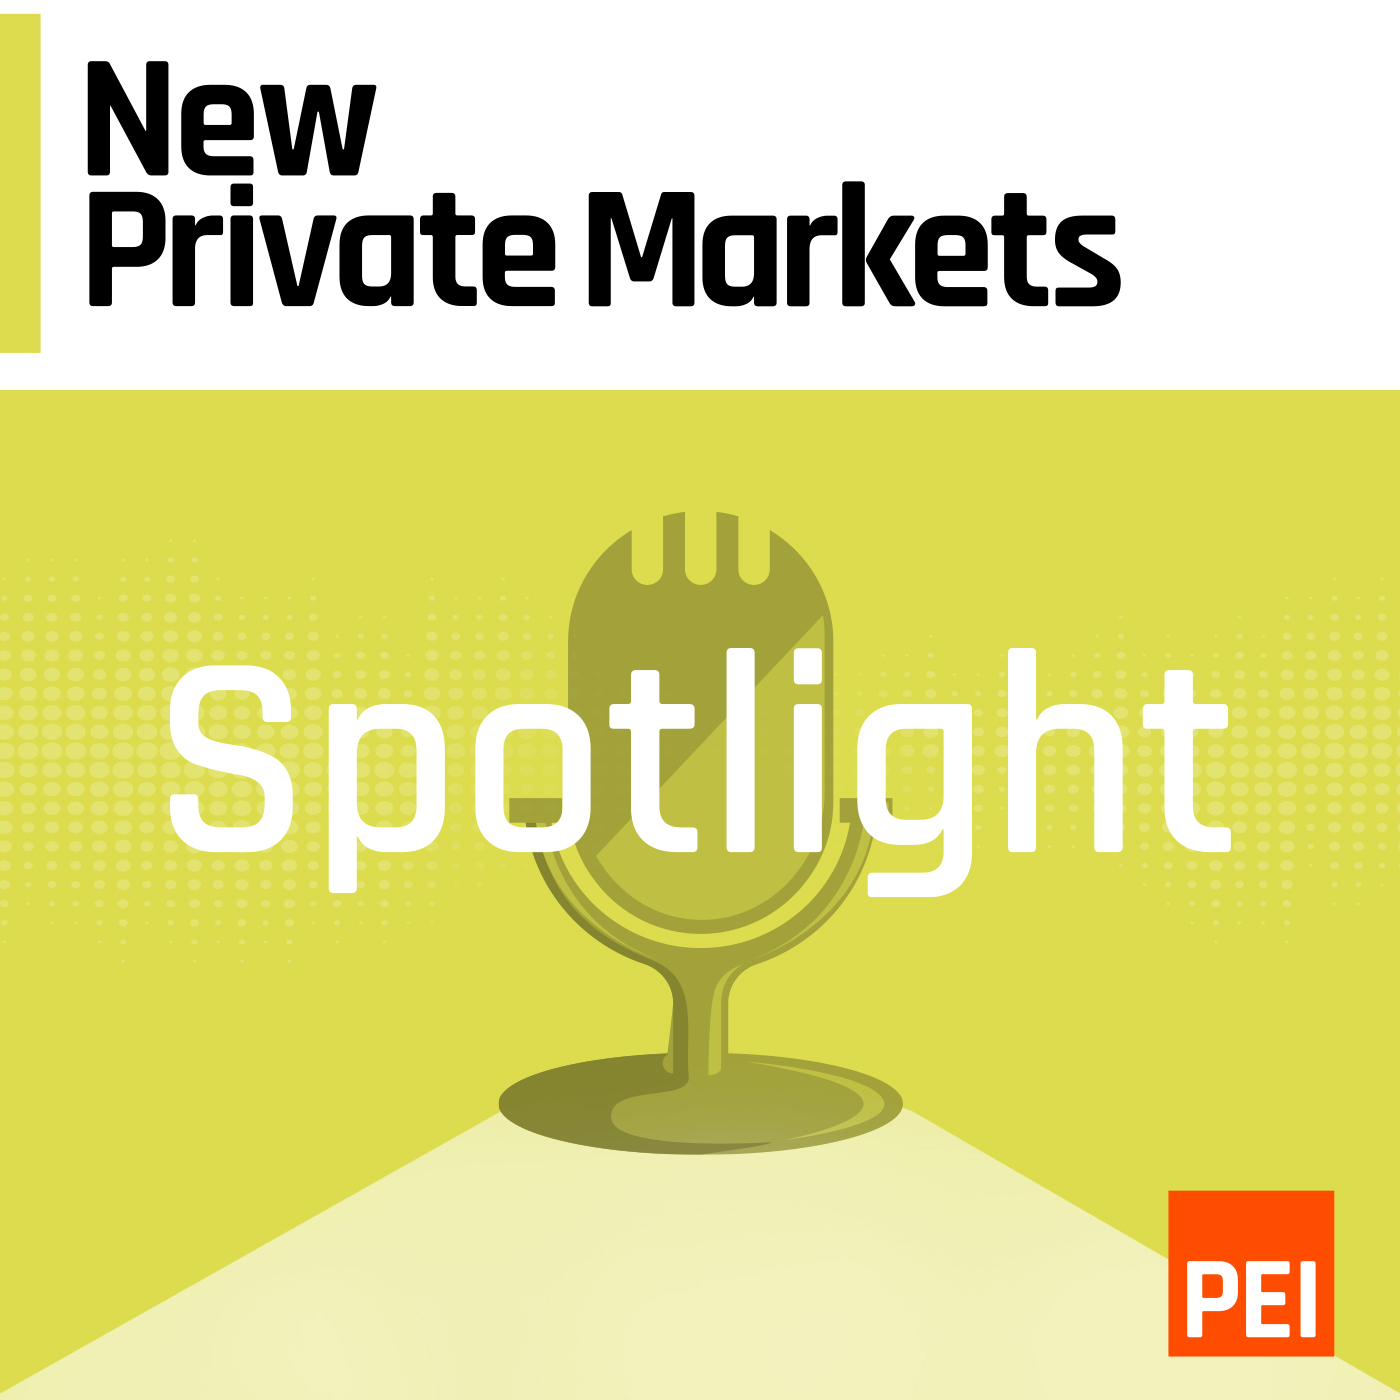 New Private Markets